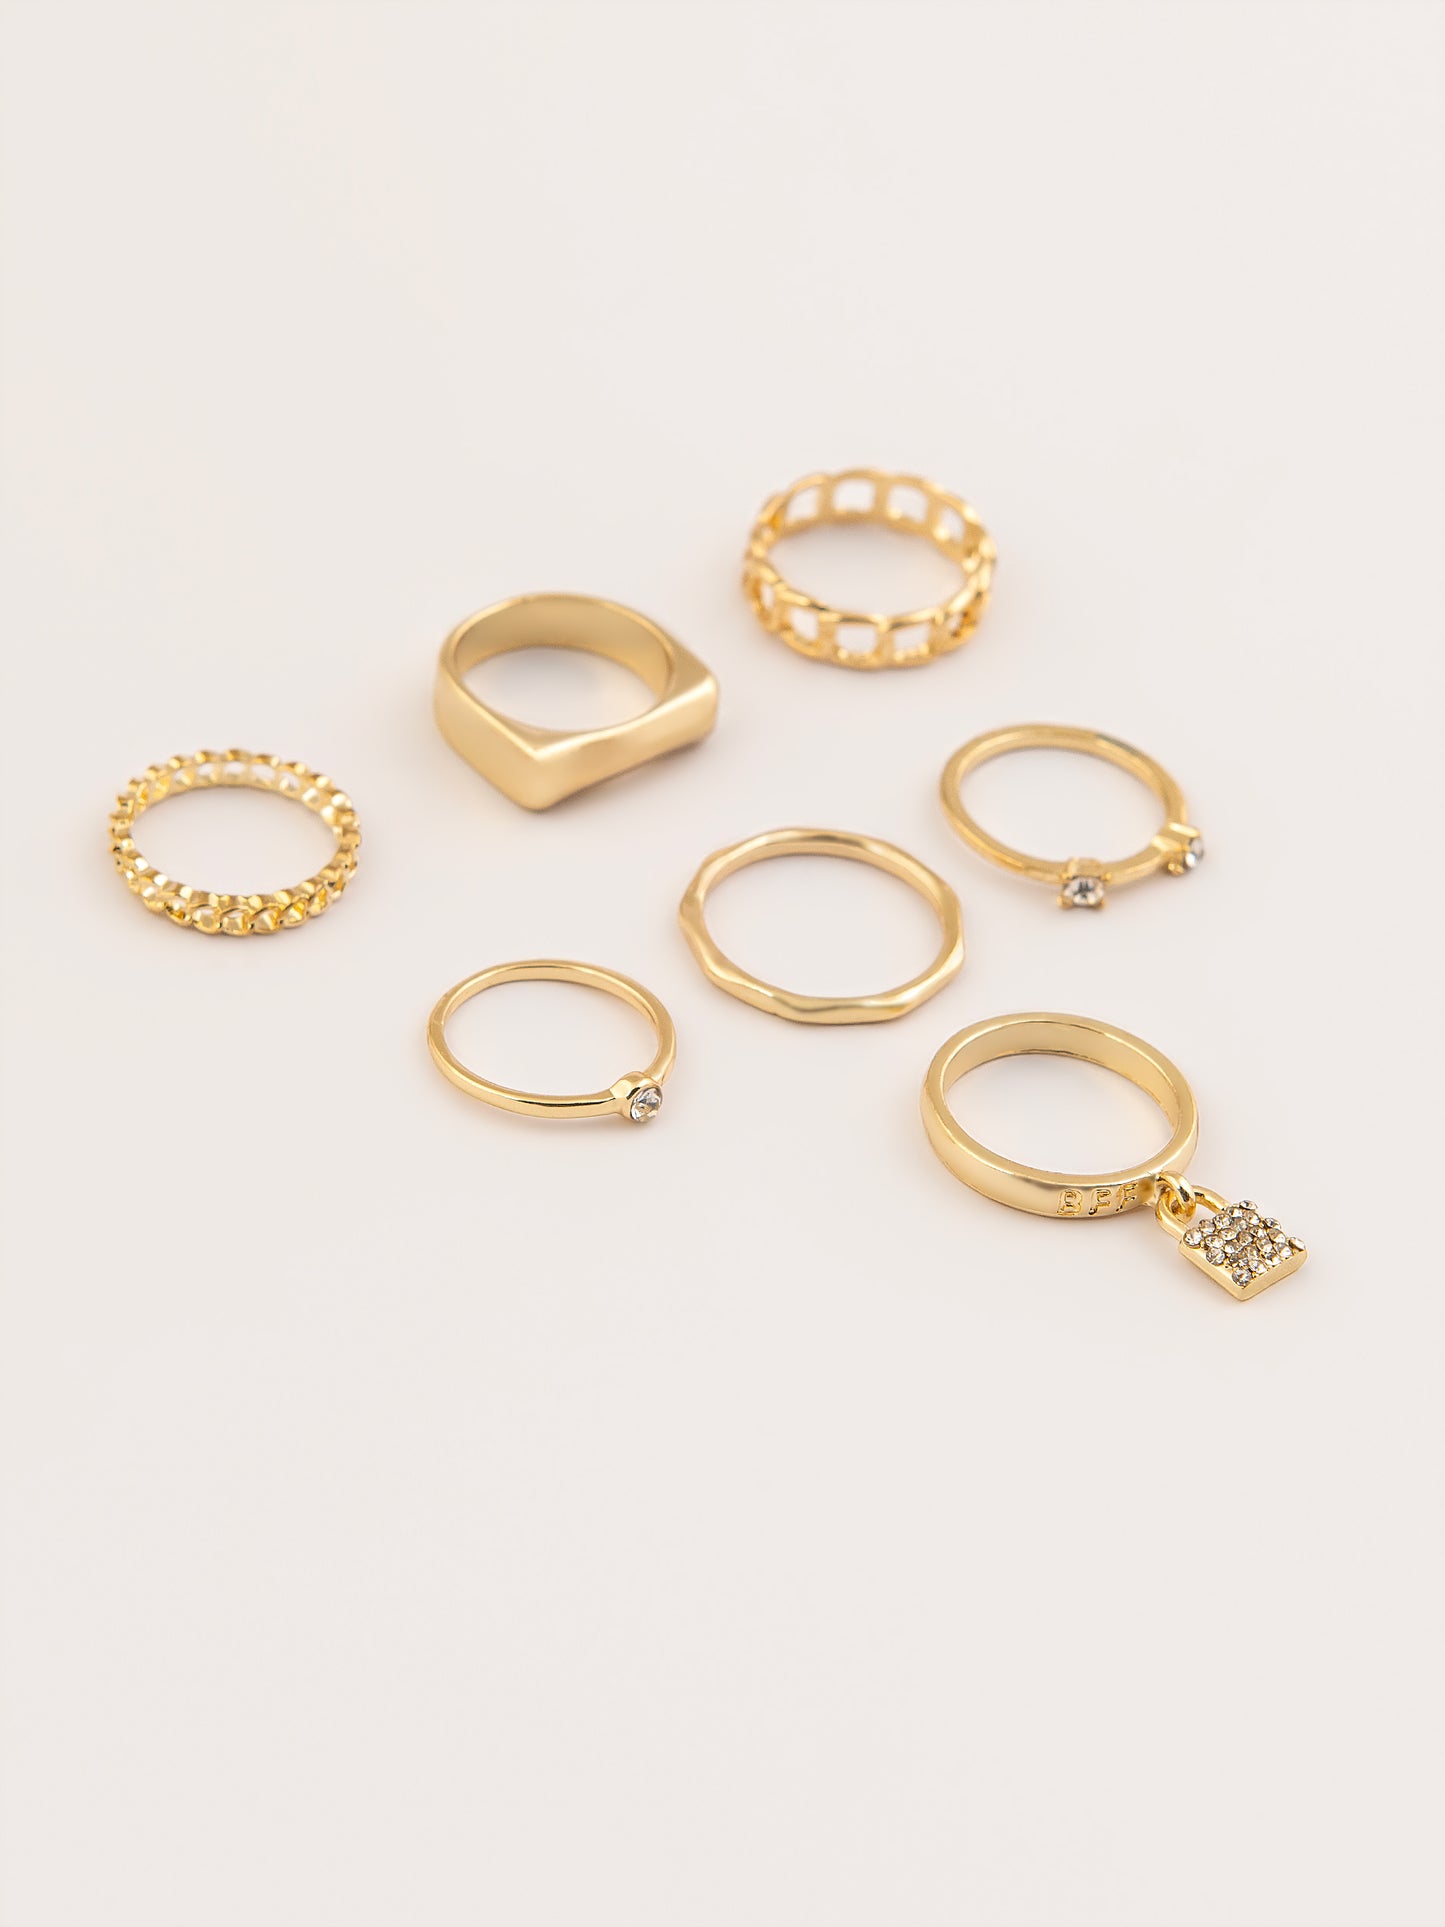 Gold Embellished Ring Set